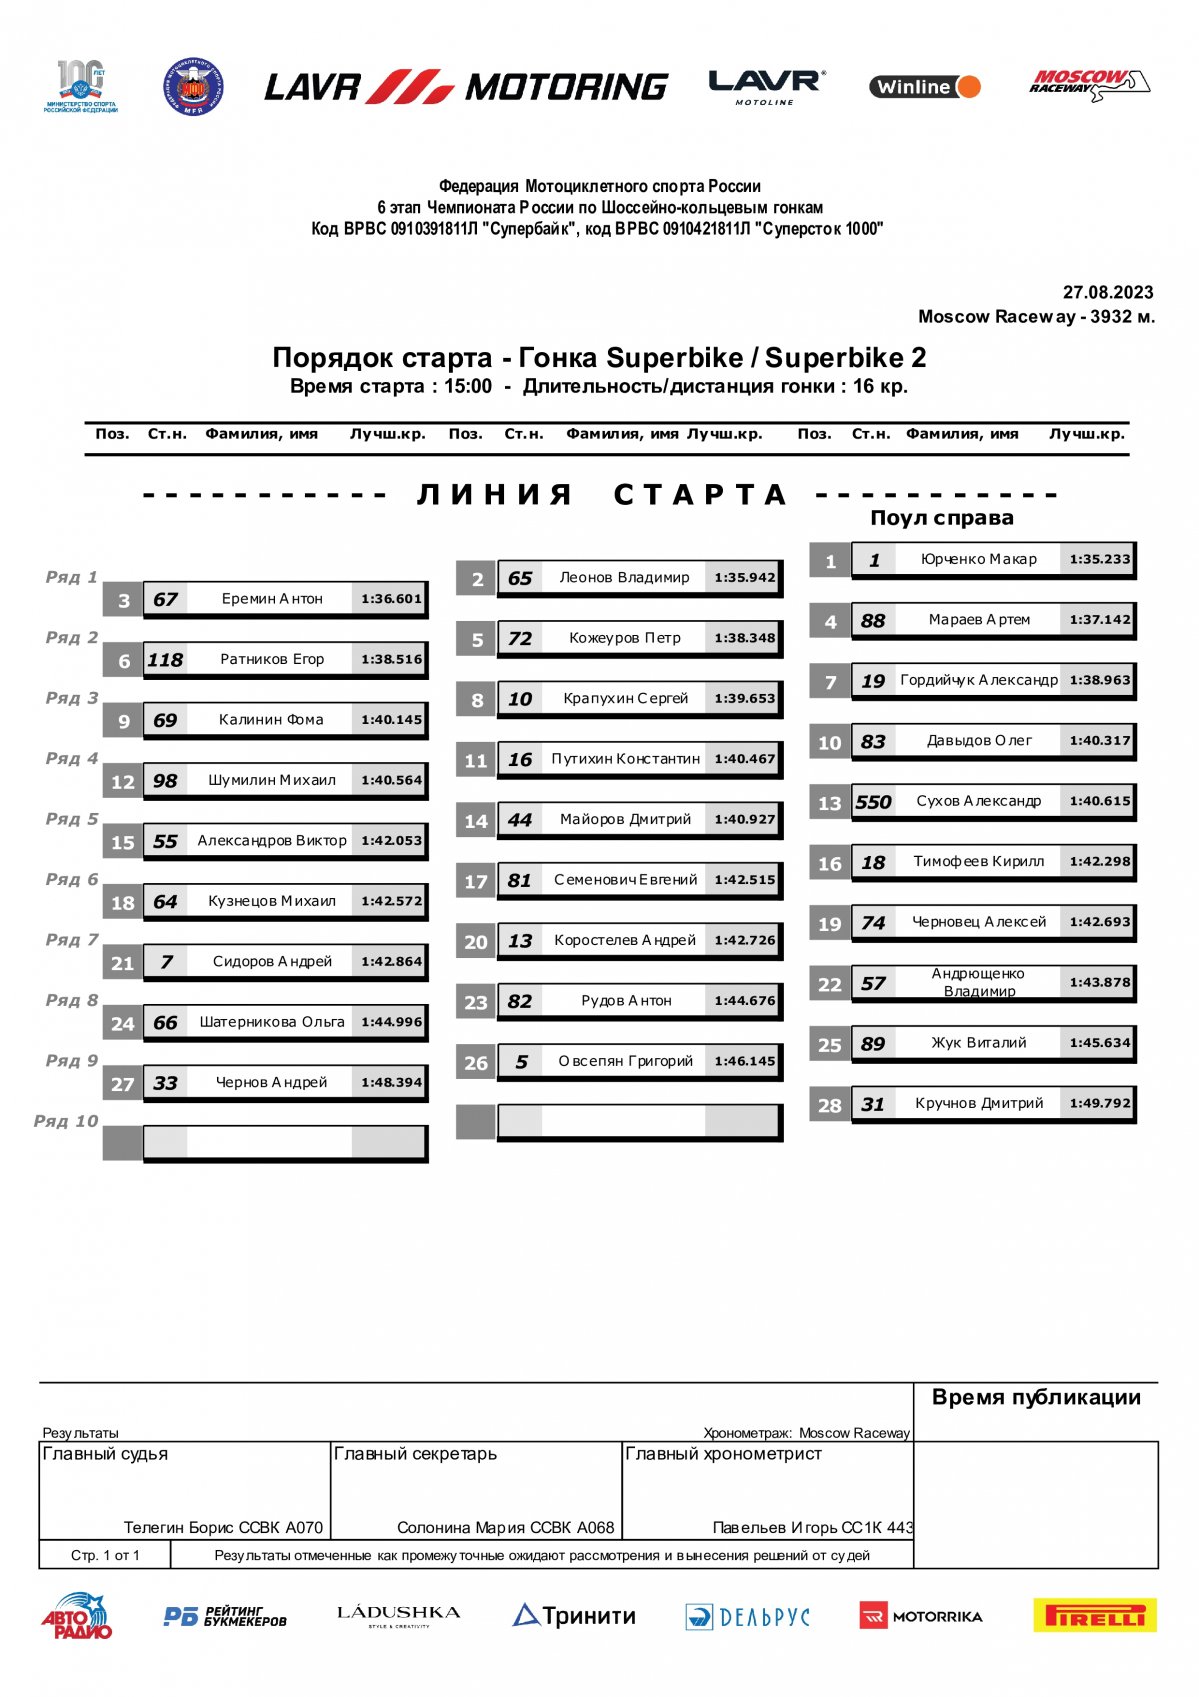 Стартовая решетка 6 этапа Чемпионата России Lavr Motoring - Гран-При Авторадио (28.08.2023)